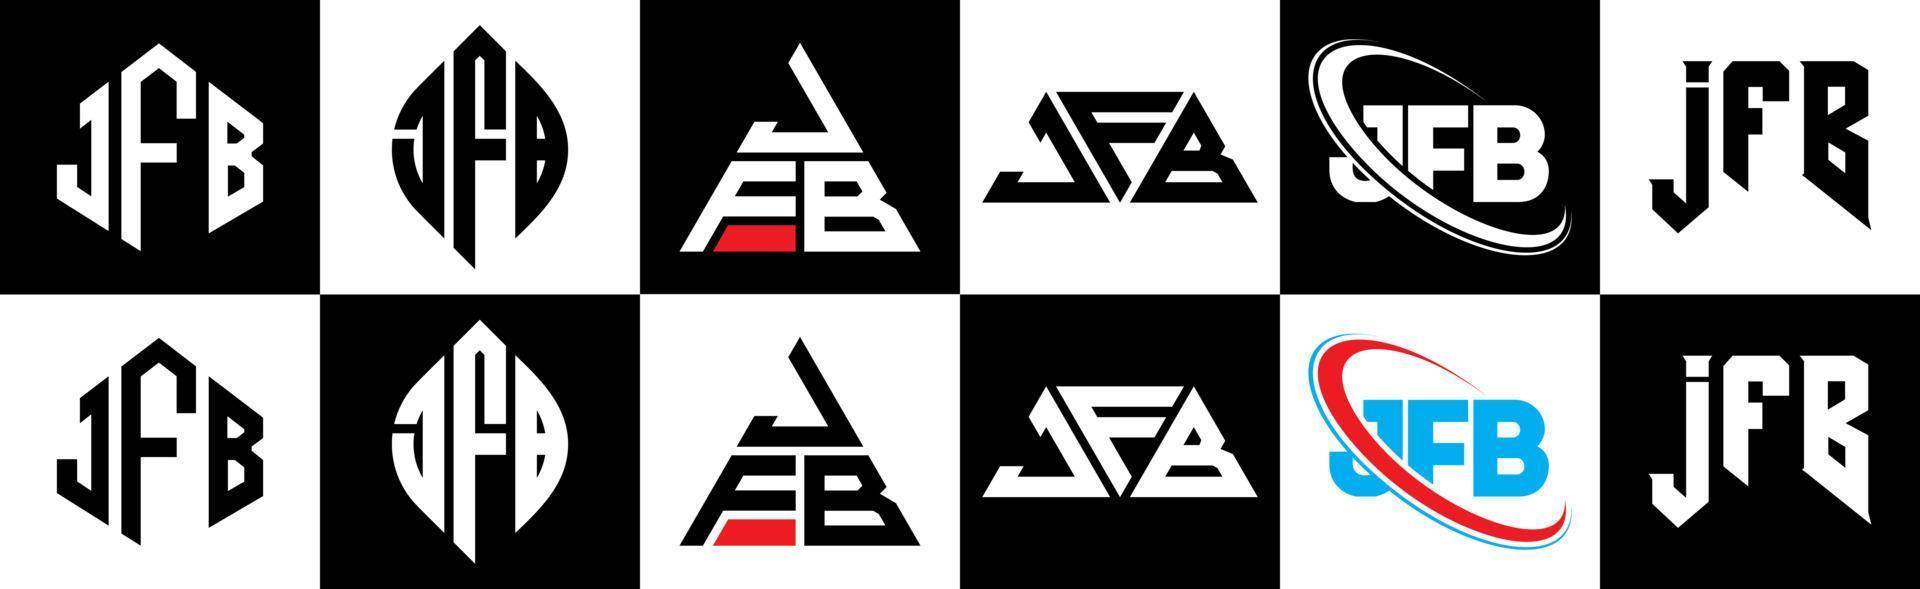 jfb-Buchstaben-Logo-Design in sechs Stilen. jfb Polygon, Kreis, Dreieck, Sechseck, flacher und einfacher Stil mit schwarz-weißem Buchstabenlogo in einer Zeichenfläche. jfb minimalistisches und klassisches Logo vektor